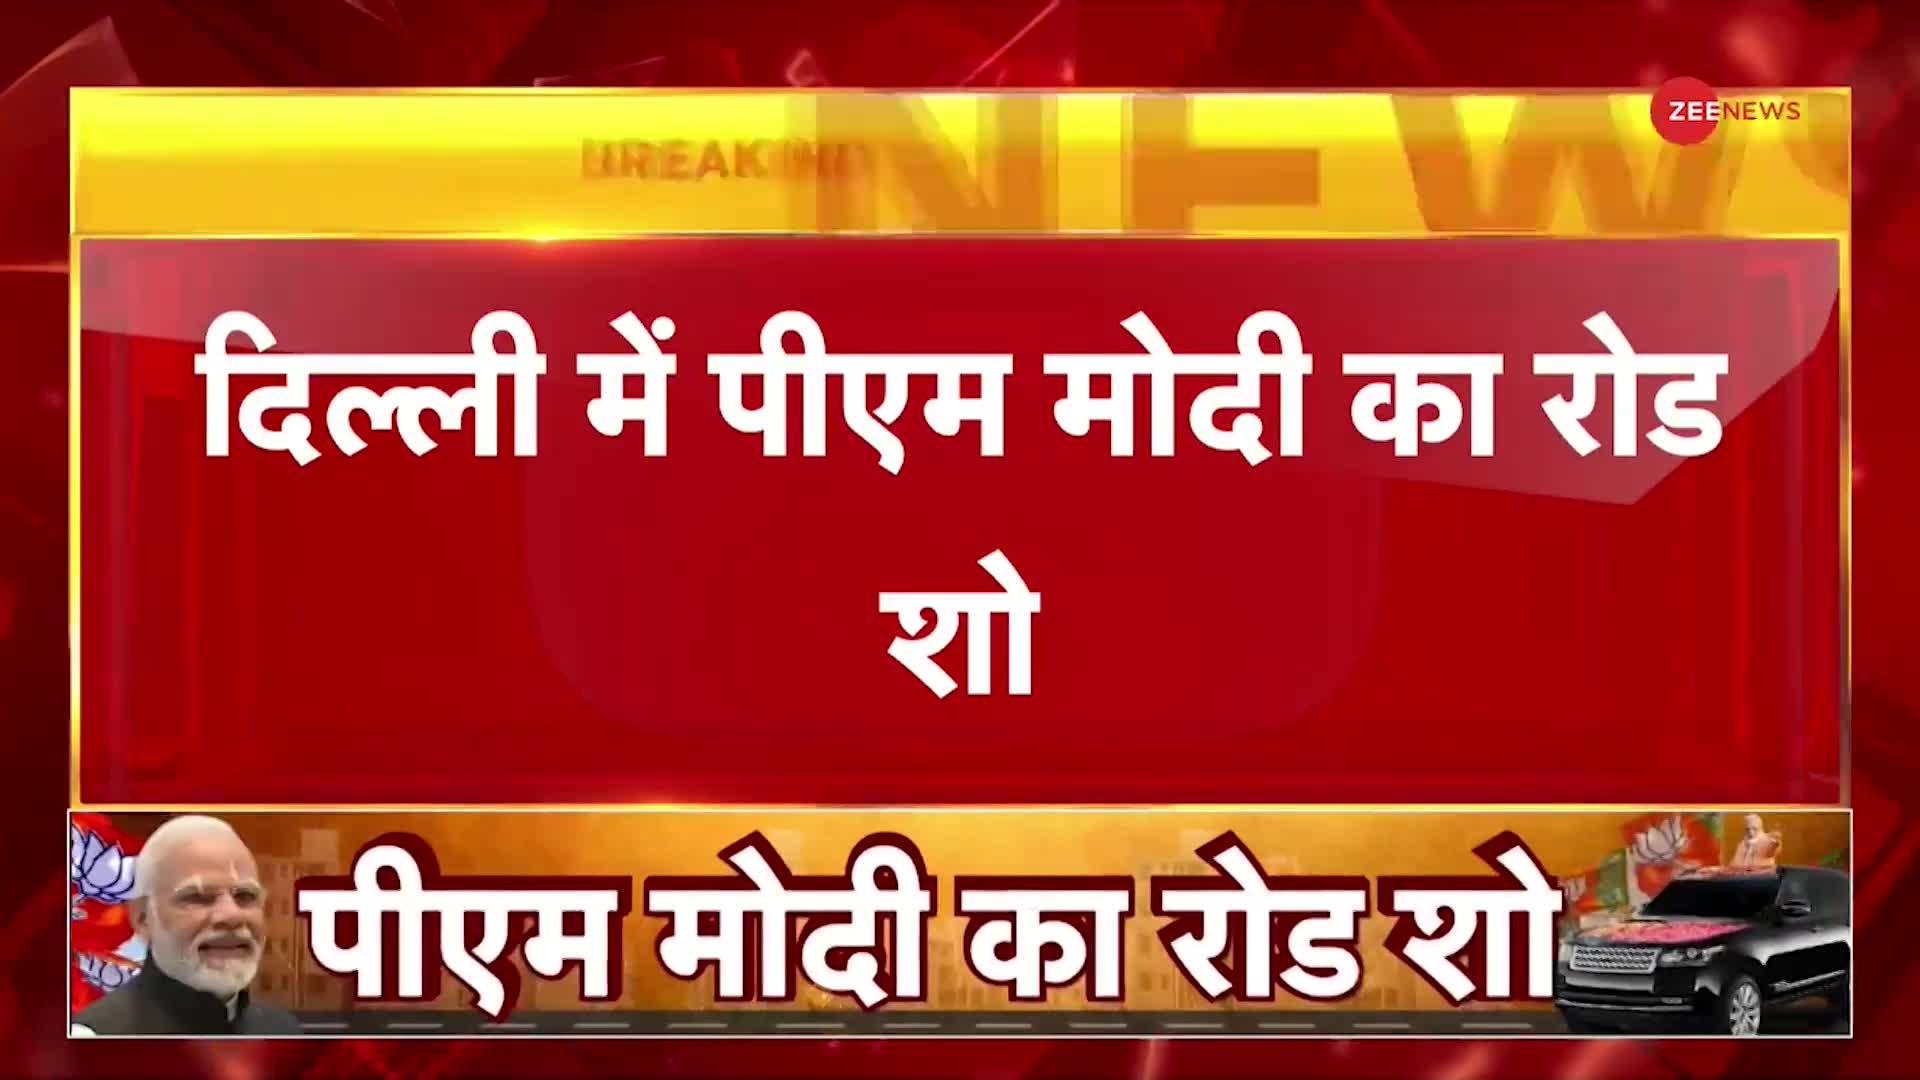 Delhi: राजधानी में आज 3:30 बजे रोड शो करेंगे PM मोदी, कई रास्ते बंद | Latest Hindi News